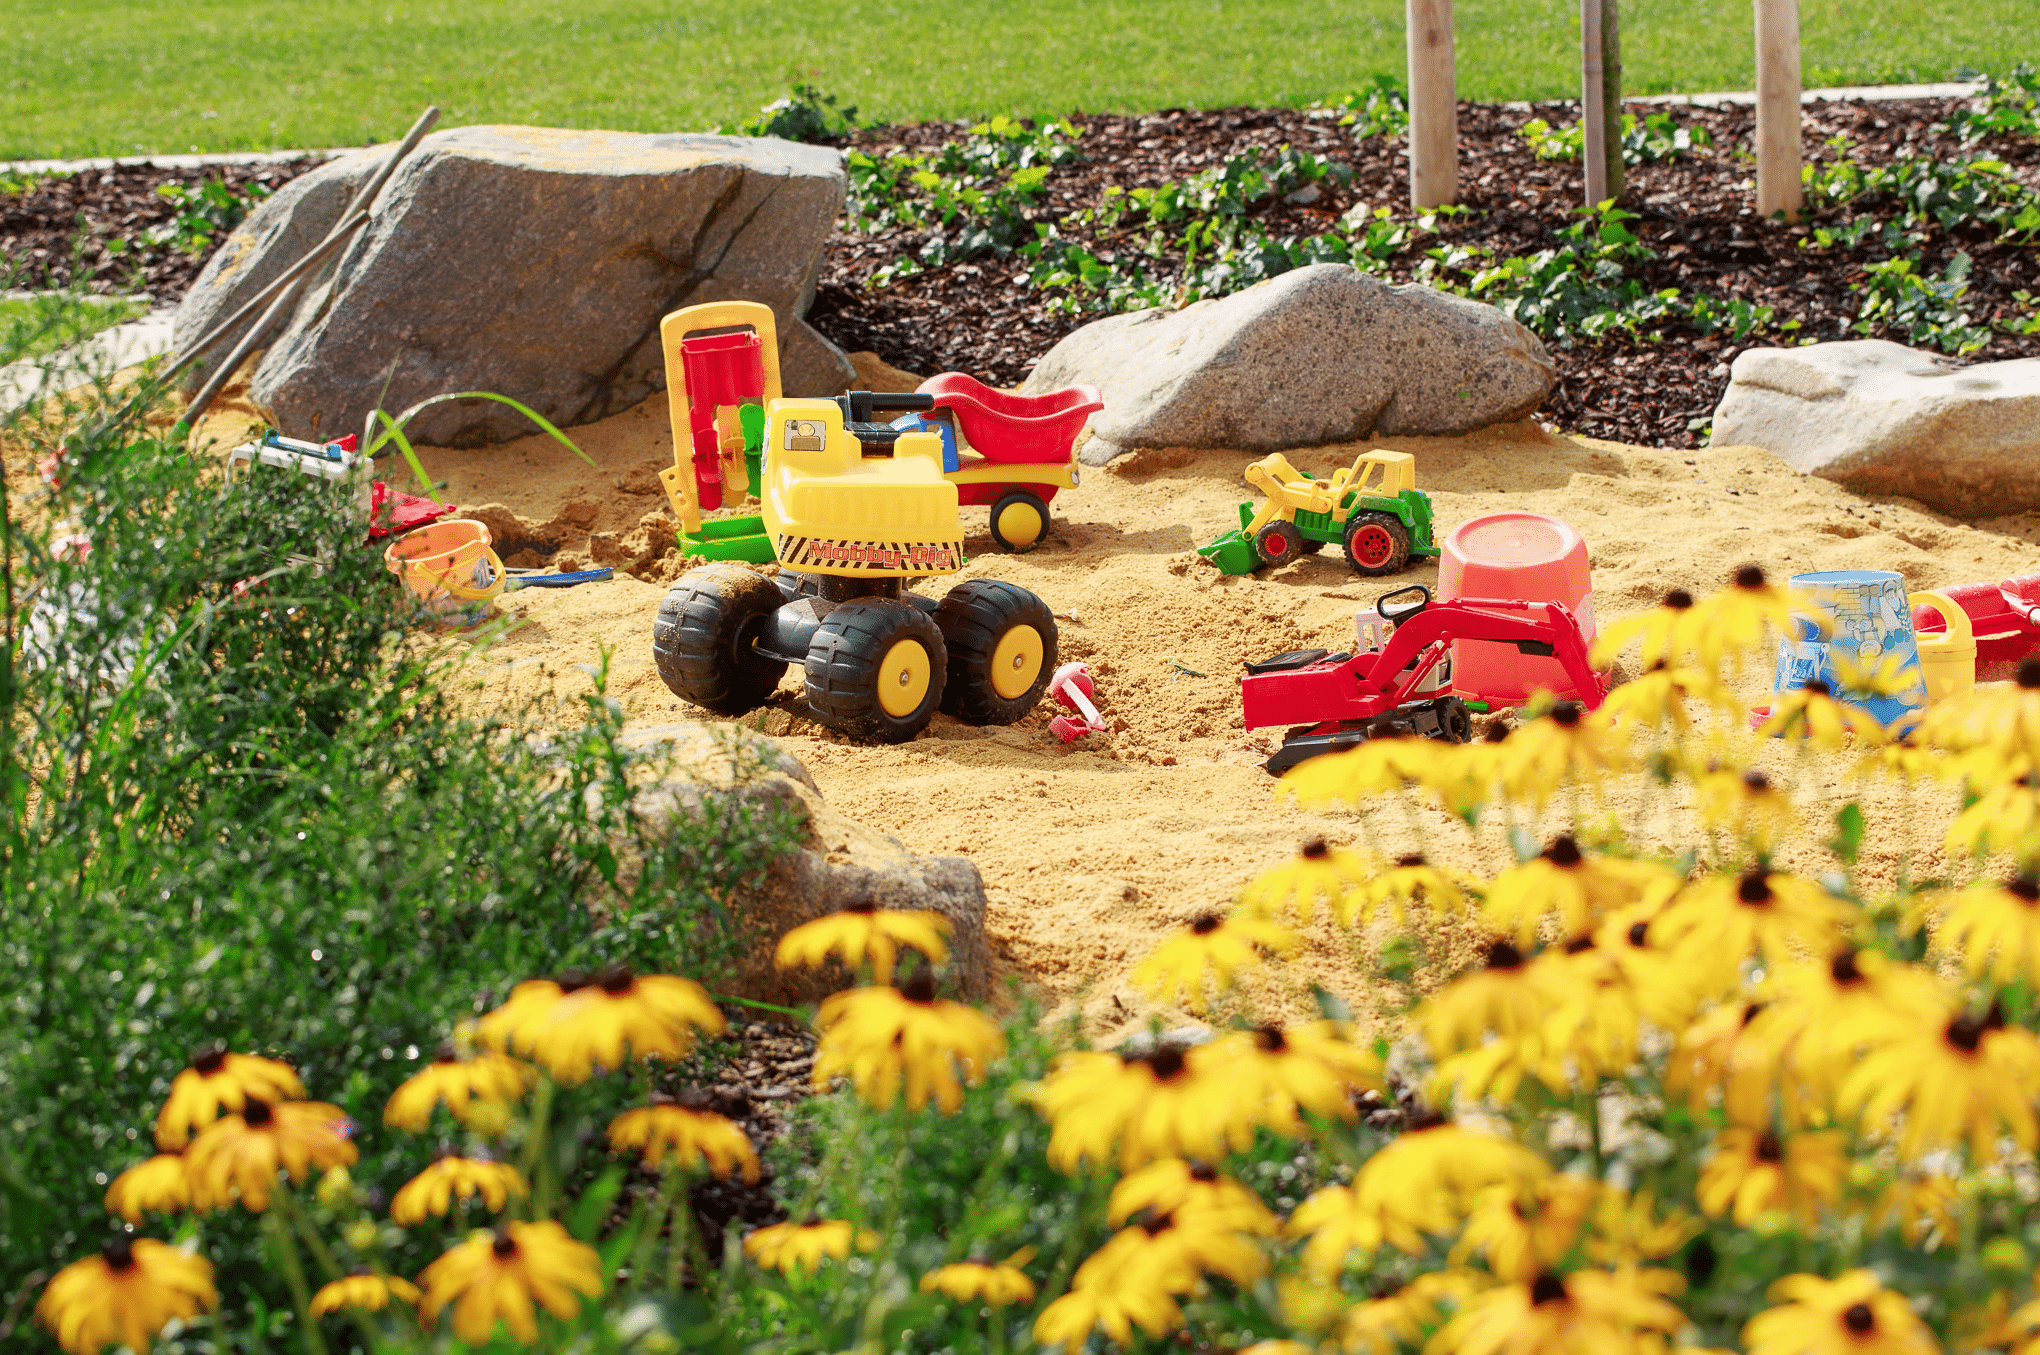 Hablesreiter zeigt eine Sandkiste mit gelben Blumen und mehreren Spielzeuge für Kinder.